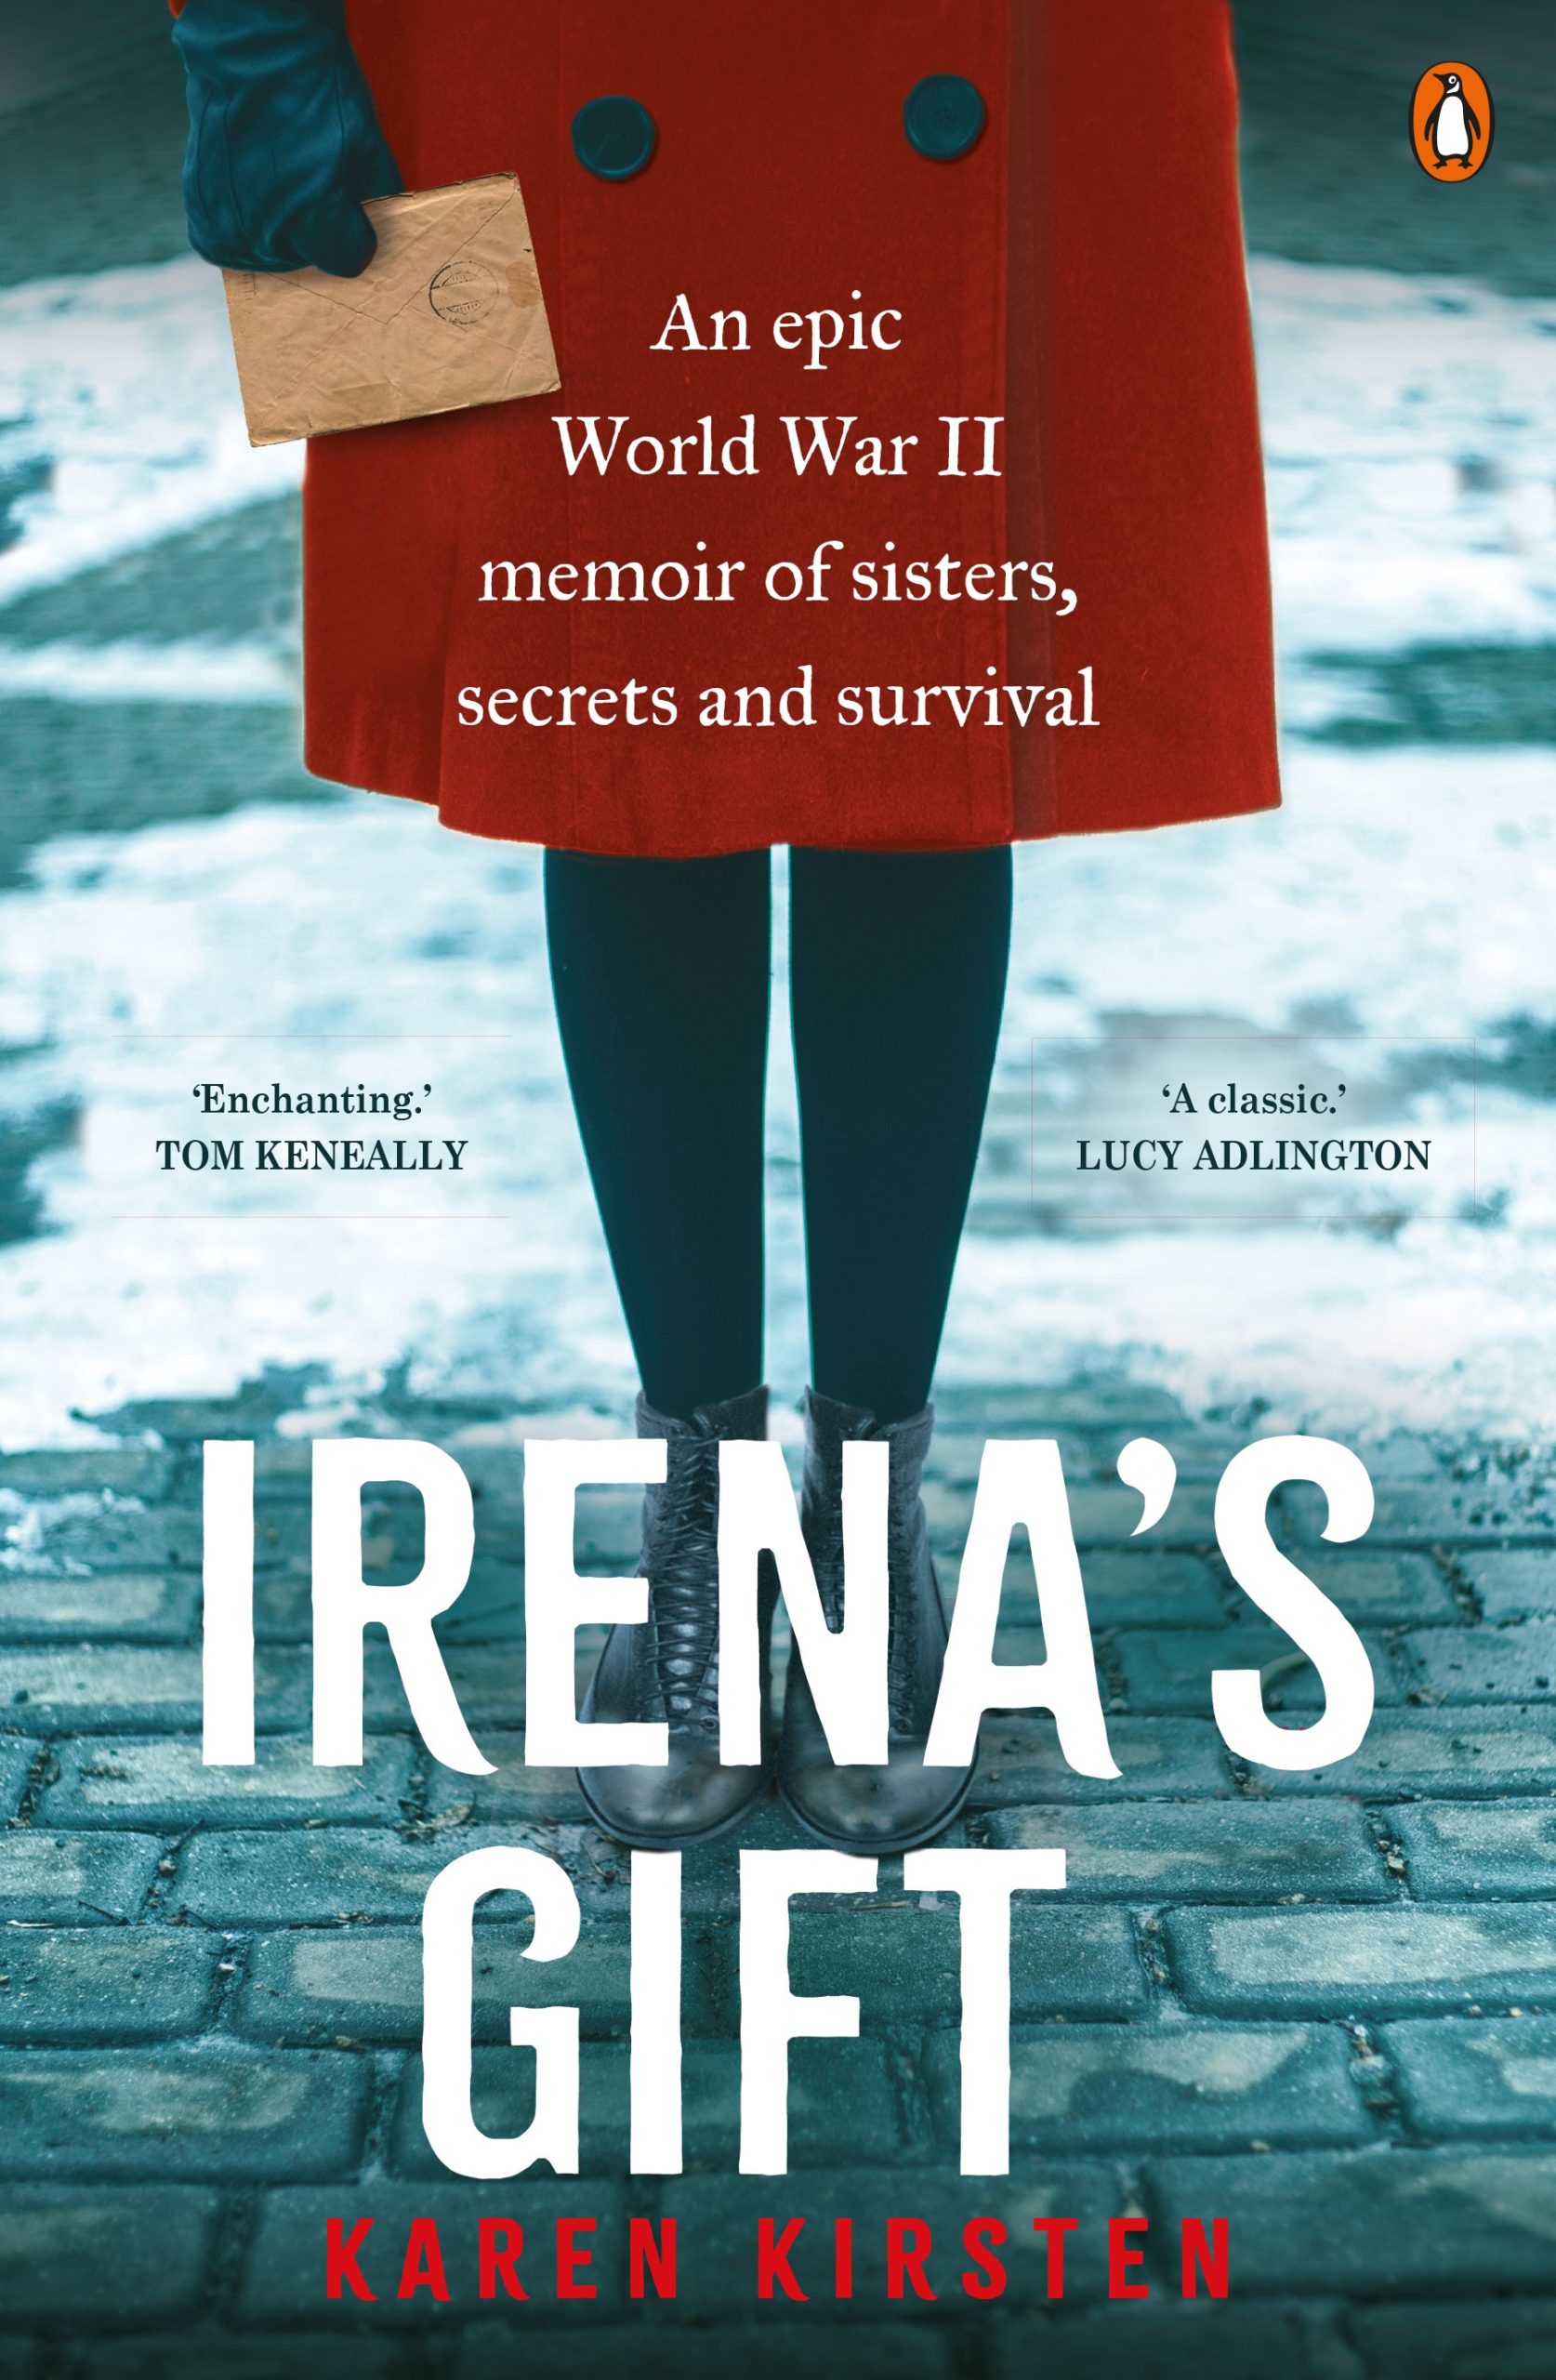 Irena's gift : an epic World War II memoir of sisters, secrets and survival by Karen Kirsten